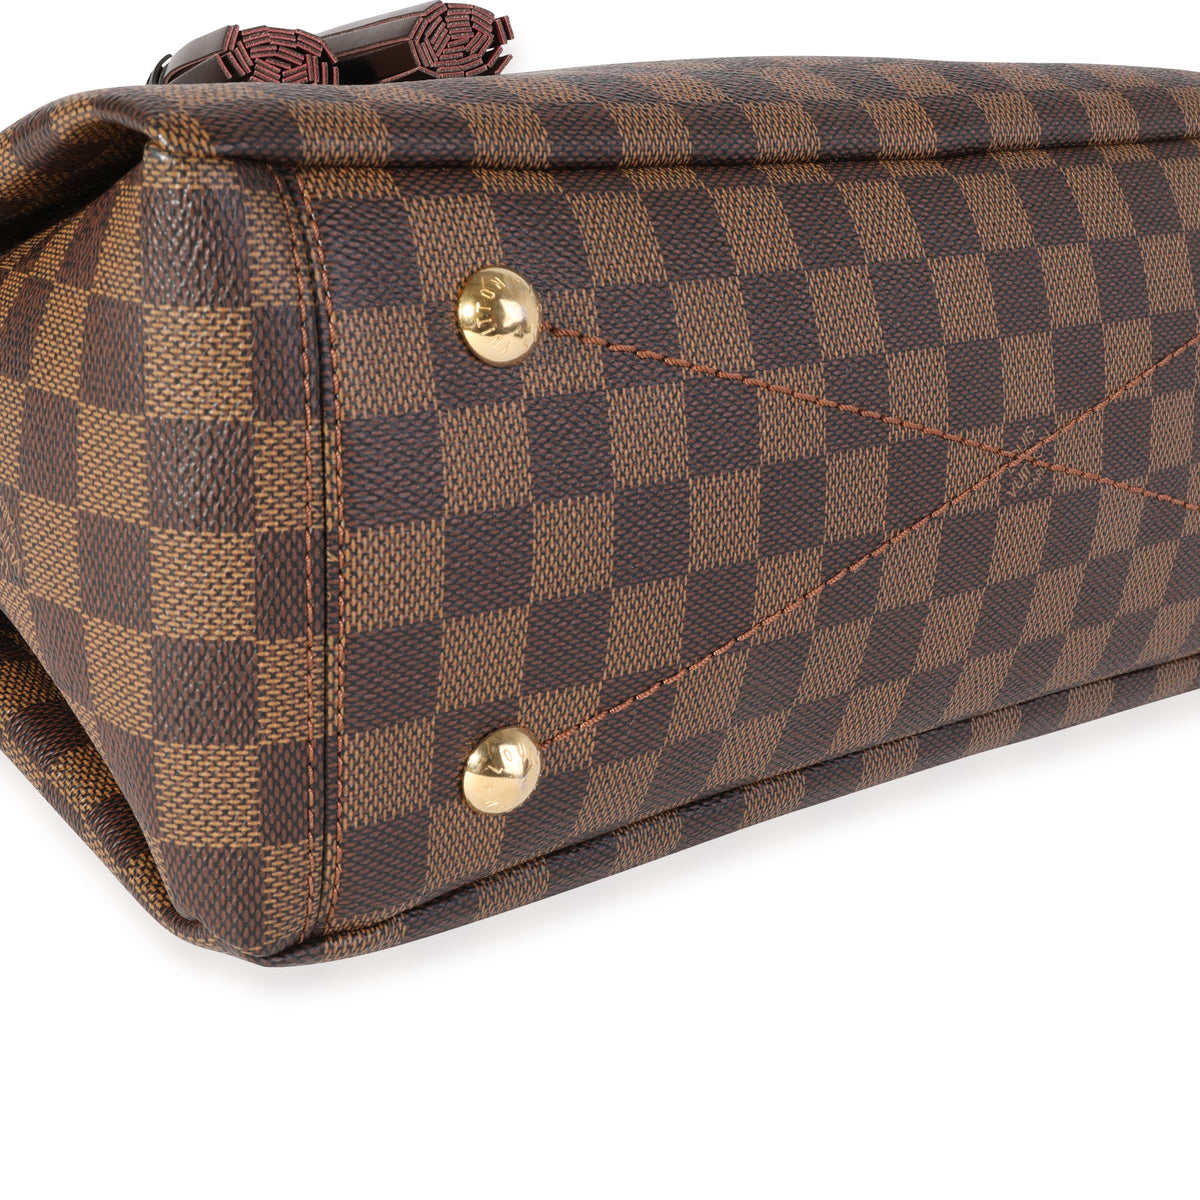 Louis Vuitton Damier Ebene Lymington - ShopStyle Satchels & Top Handle Bags